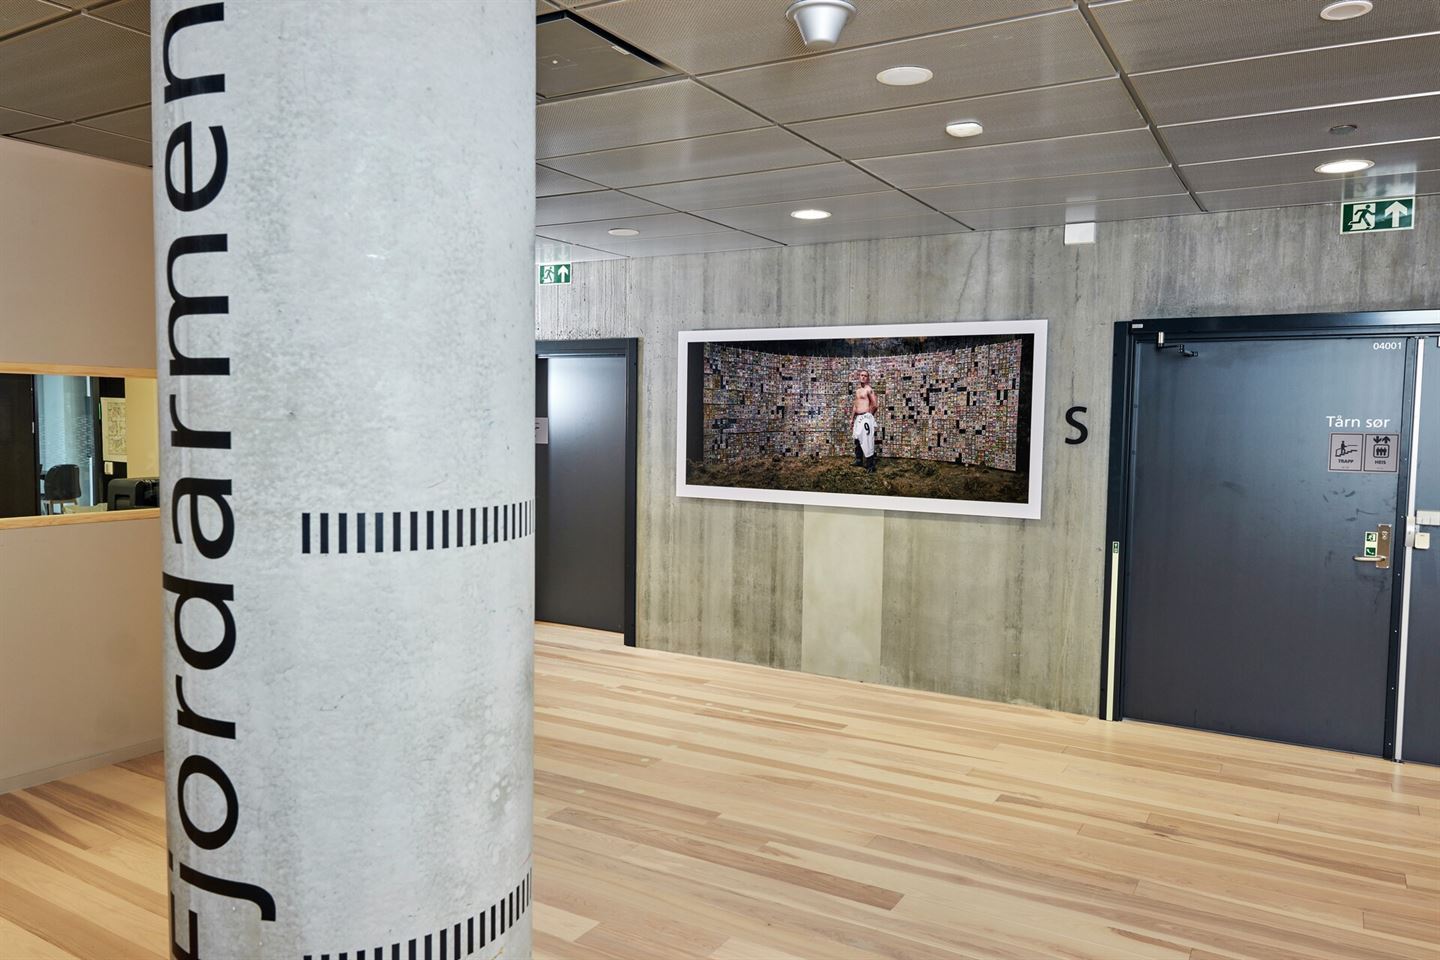 Stort fotografi av mann i fotballdrakt på vegg i kontorlandskap med smårom. I framgrunnen står ei betongsøyle med teksten Fjordarmen.
